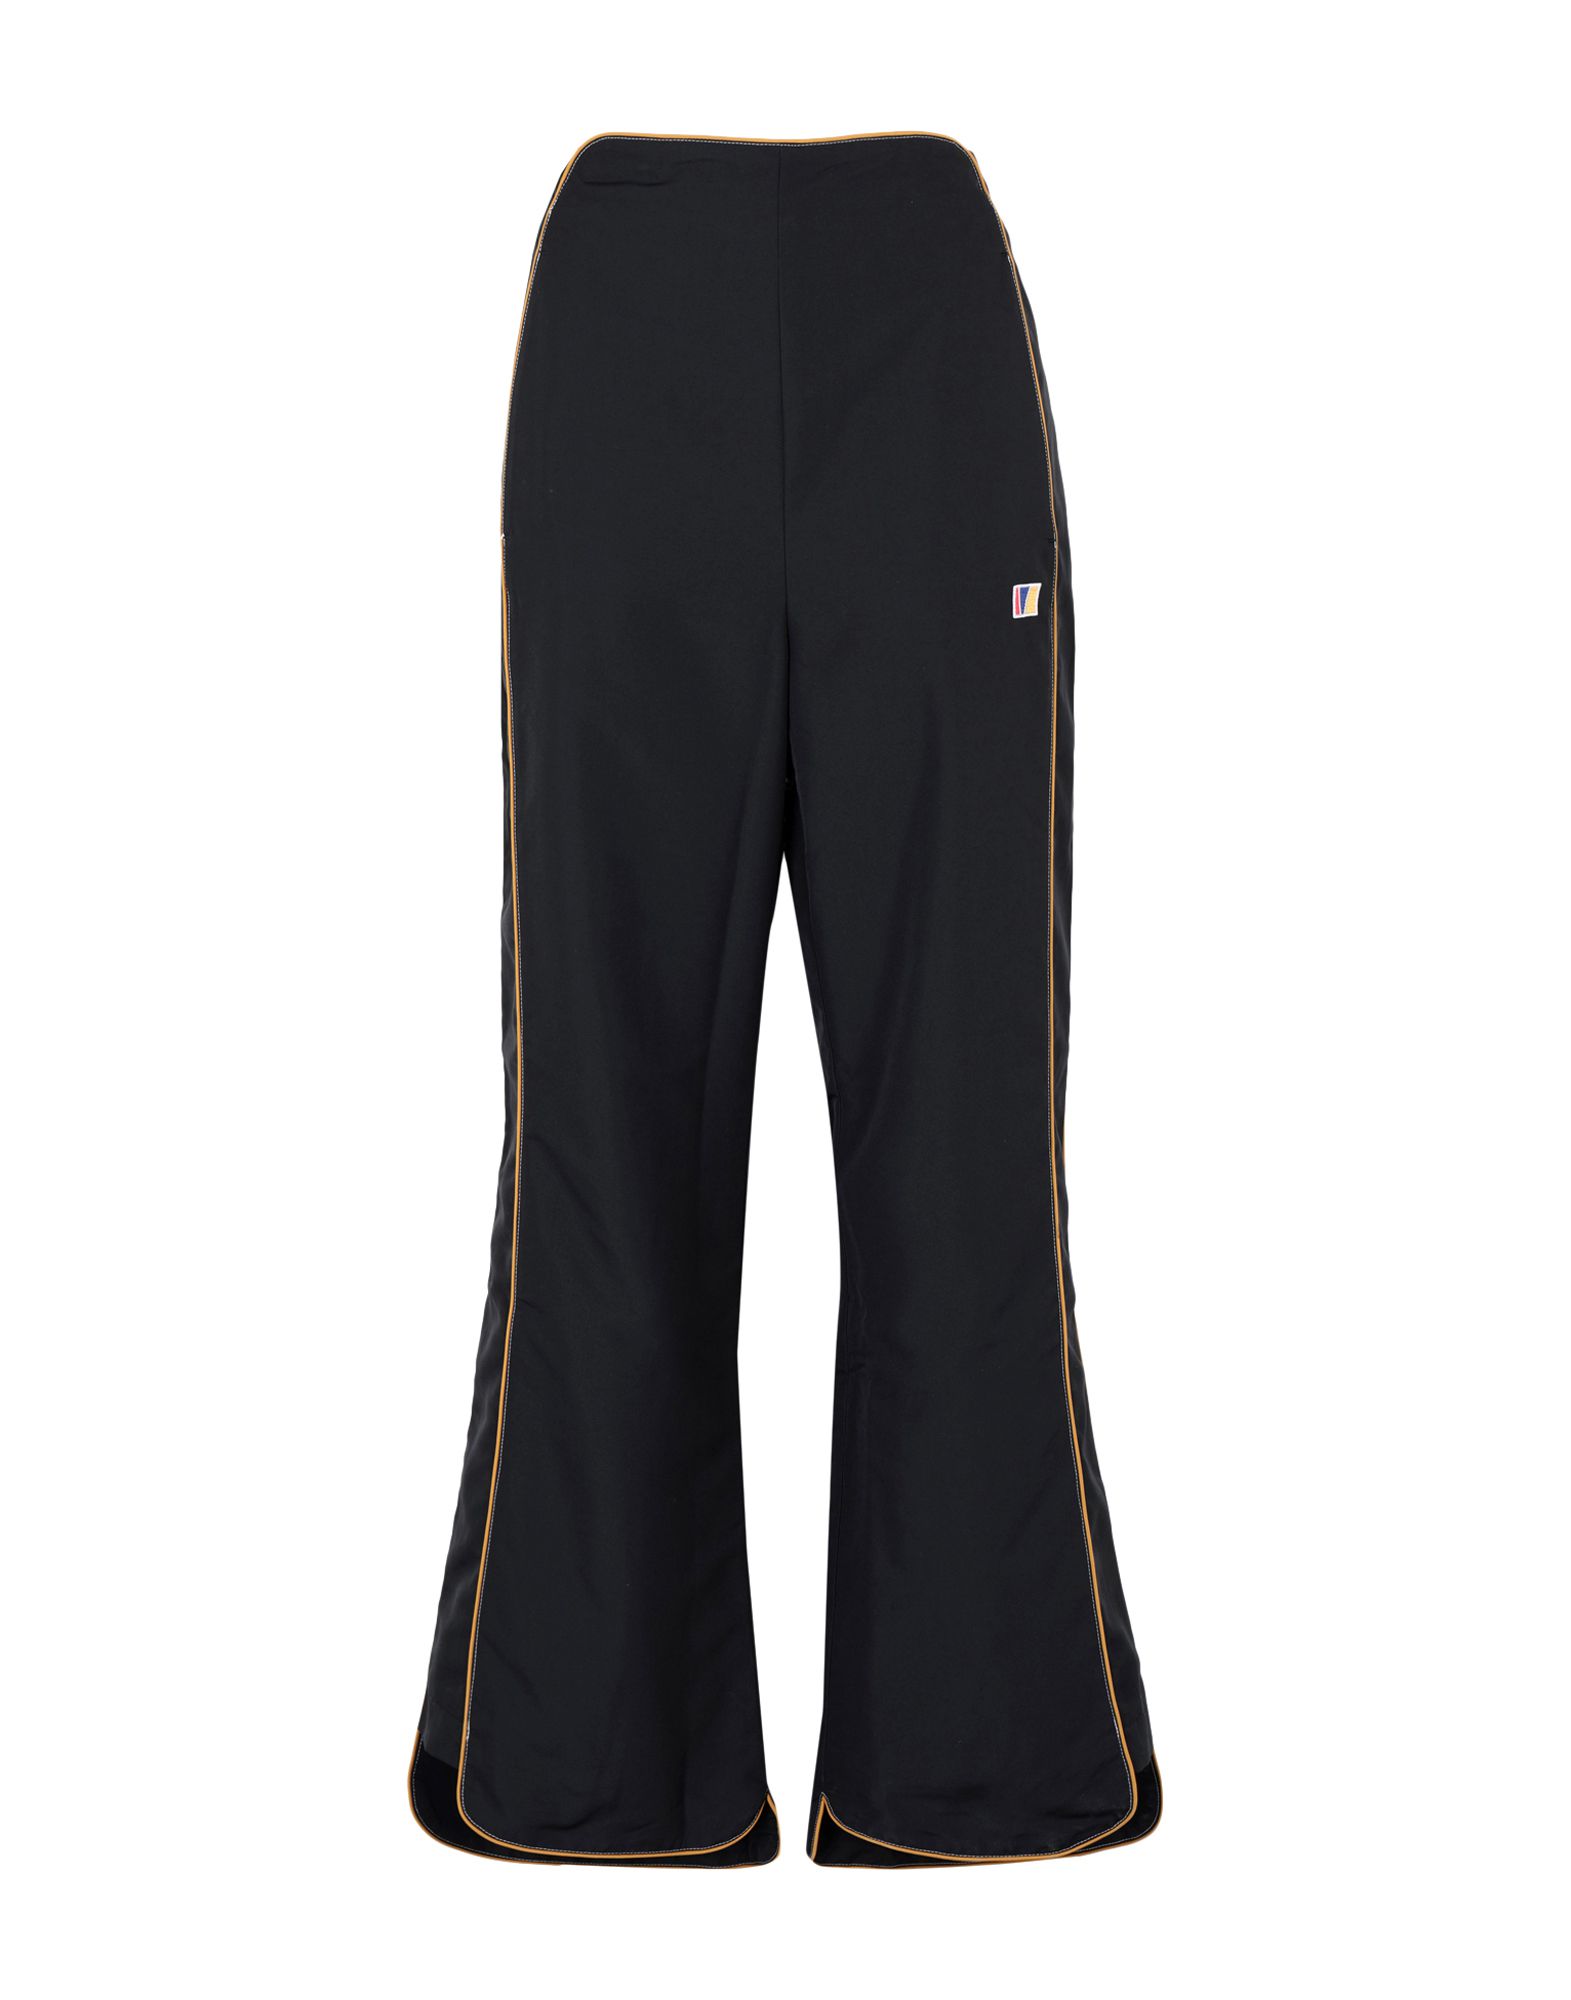 《送料無料》REEBOK by PYER MOSS レディース パンツ ブラック XS ポリエステル 100% RCxPM High Waist Trousers